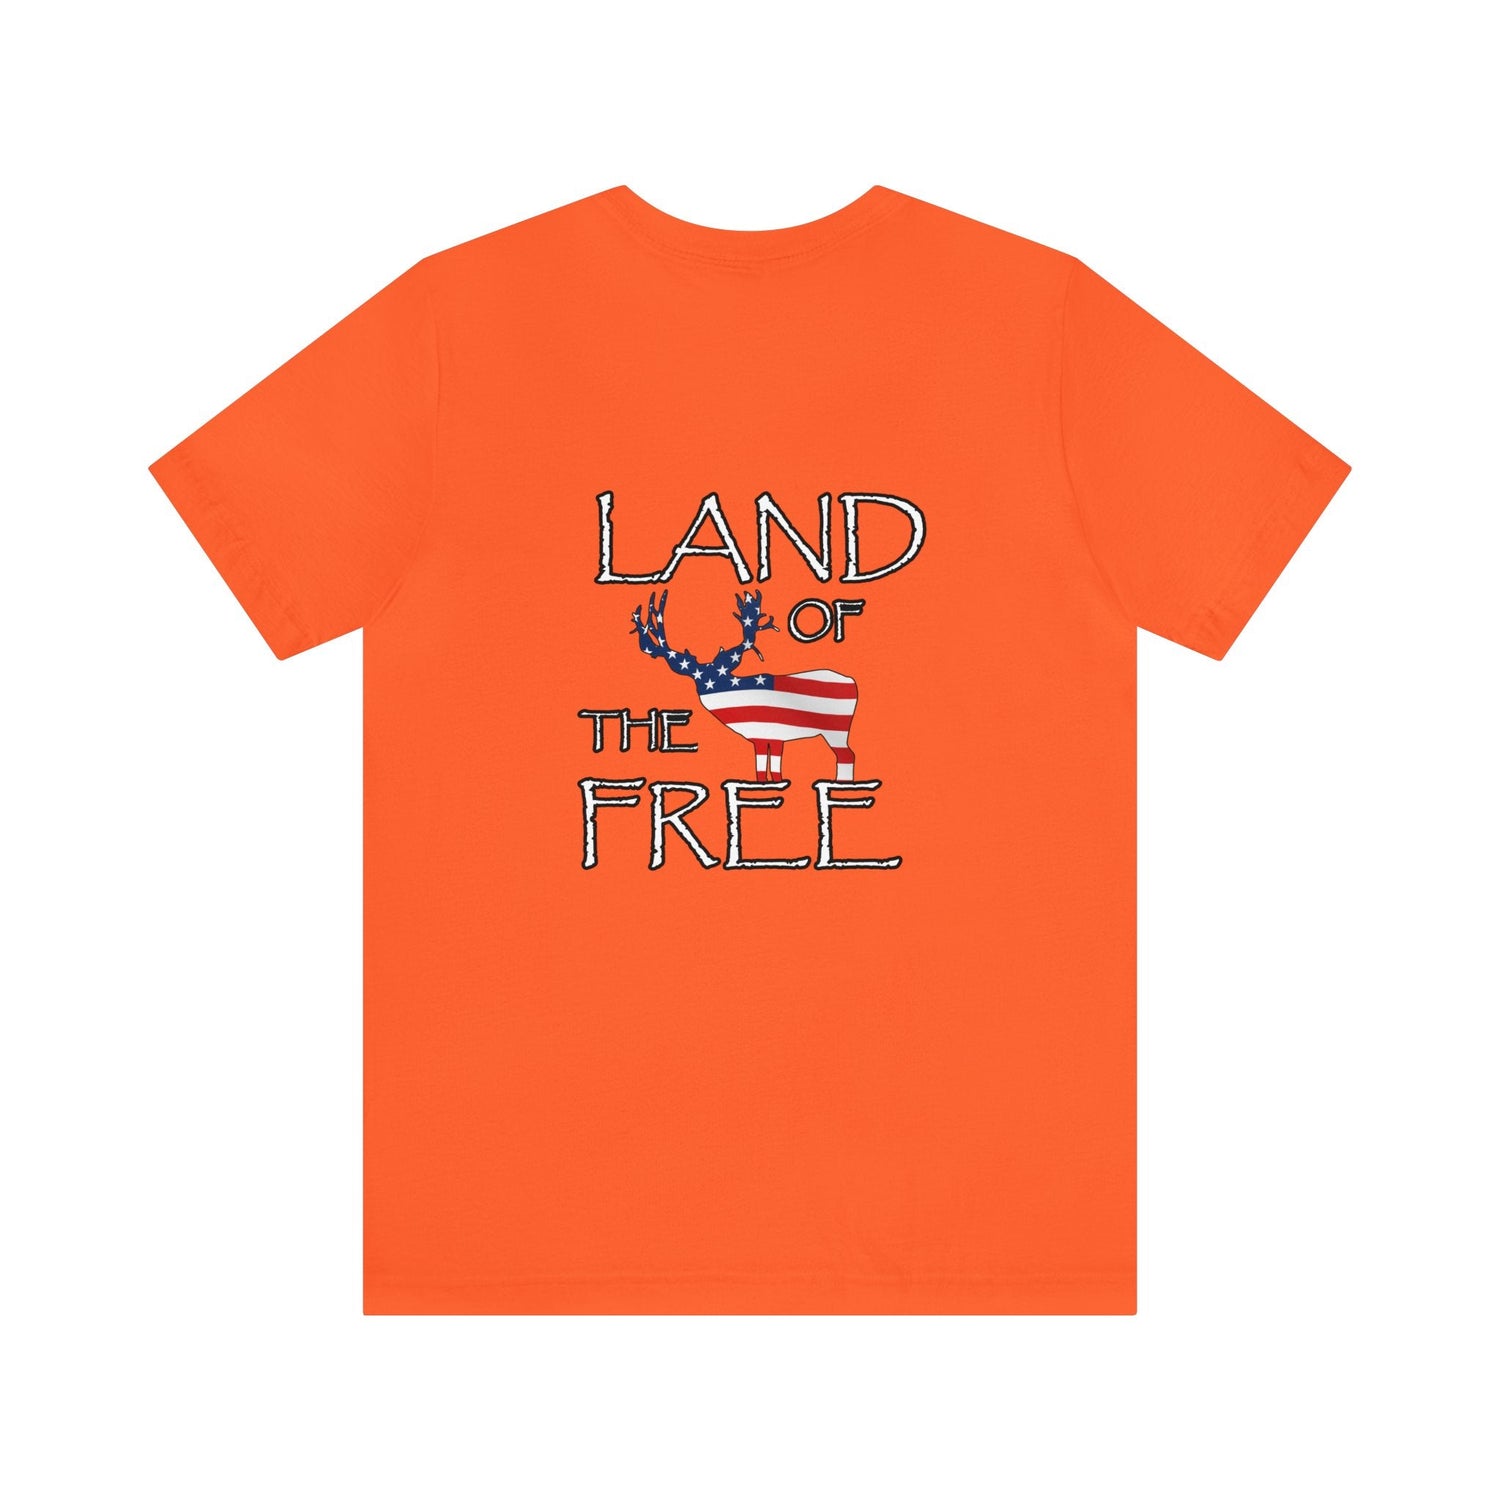 Western deer hunting t-shirt, color orange, front design placement